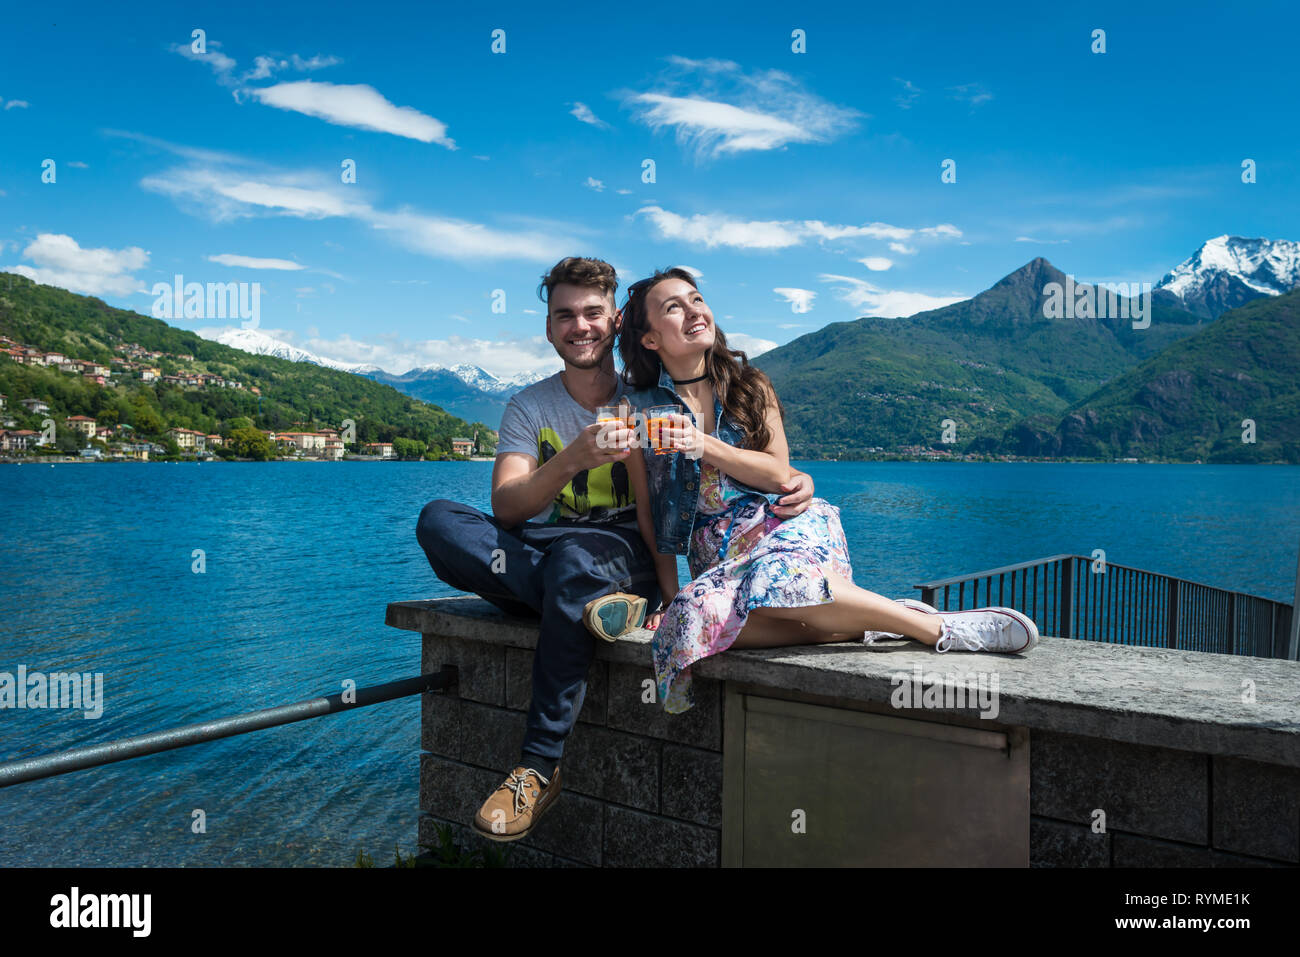 Glückliches Paar sitzt mit zwei Gläser Aperol Spritz mit herrlichem Blick  auf den See, die Hügel und die schneebedeckten Berge in Como, Italien.  Lächelnd Kerl mit Freundin Stockfotografie - Alamy